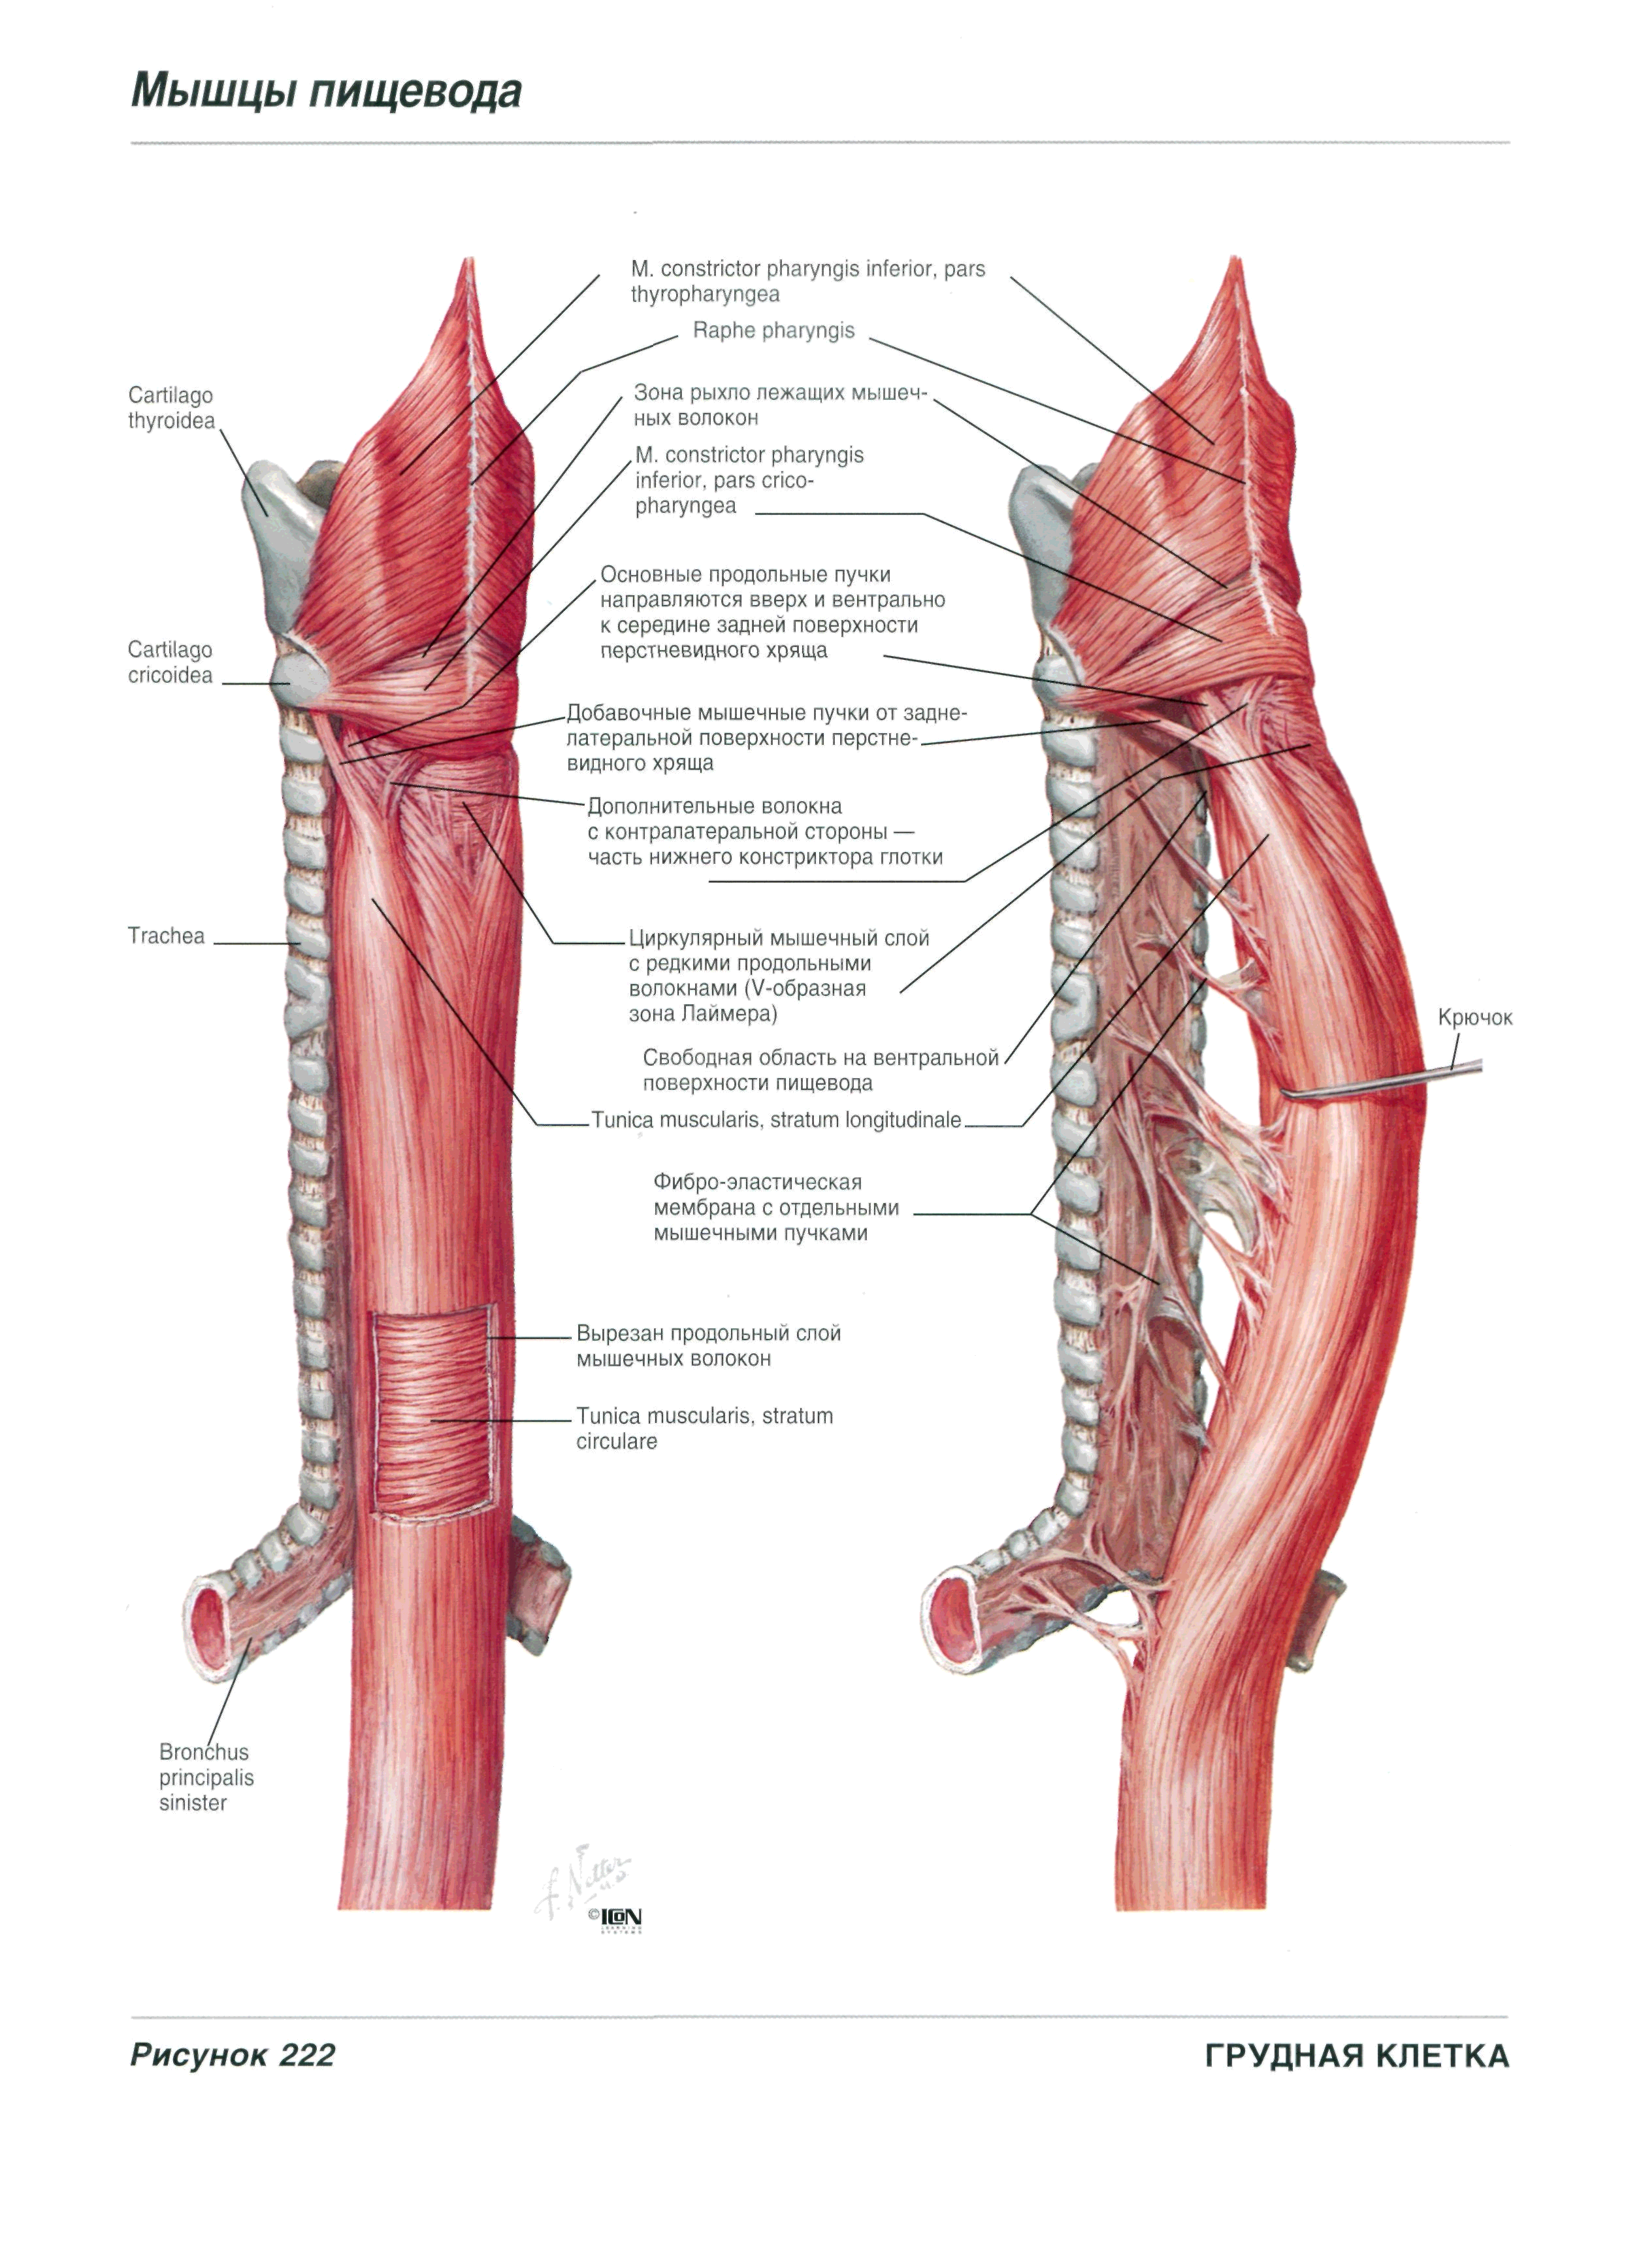 Ход пищевода. Топография пищевода анатомия. Синтопия пищевода анатомия. Шейный отдел пищевода анатомия. Синтопия грудного отдела пищевода топографическая анатомия.